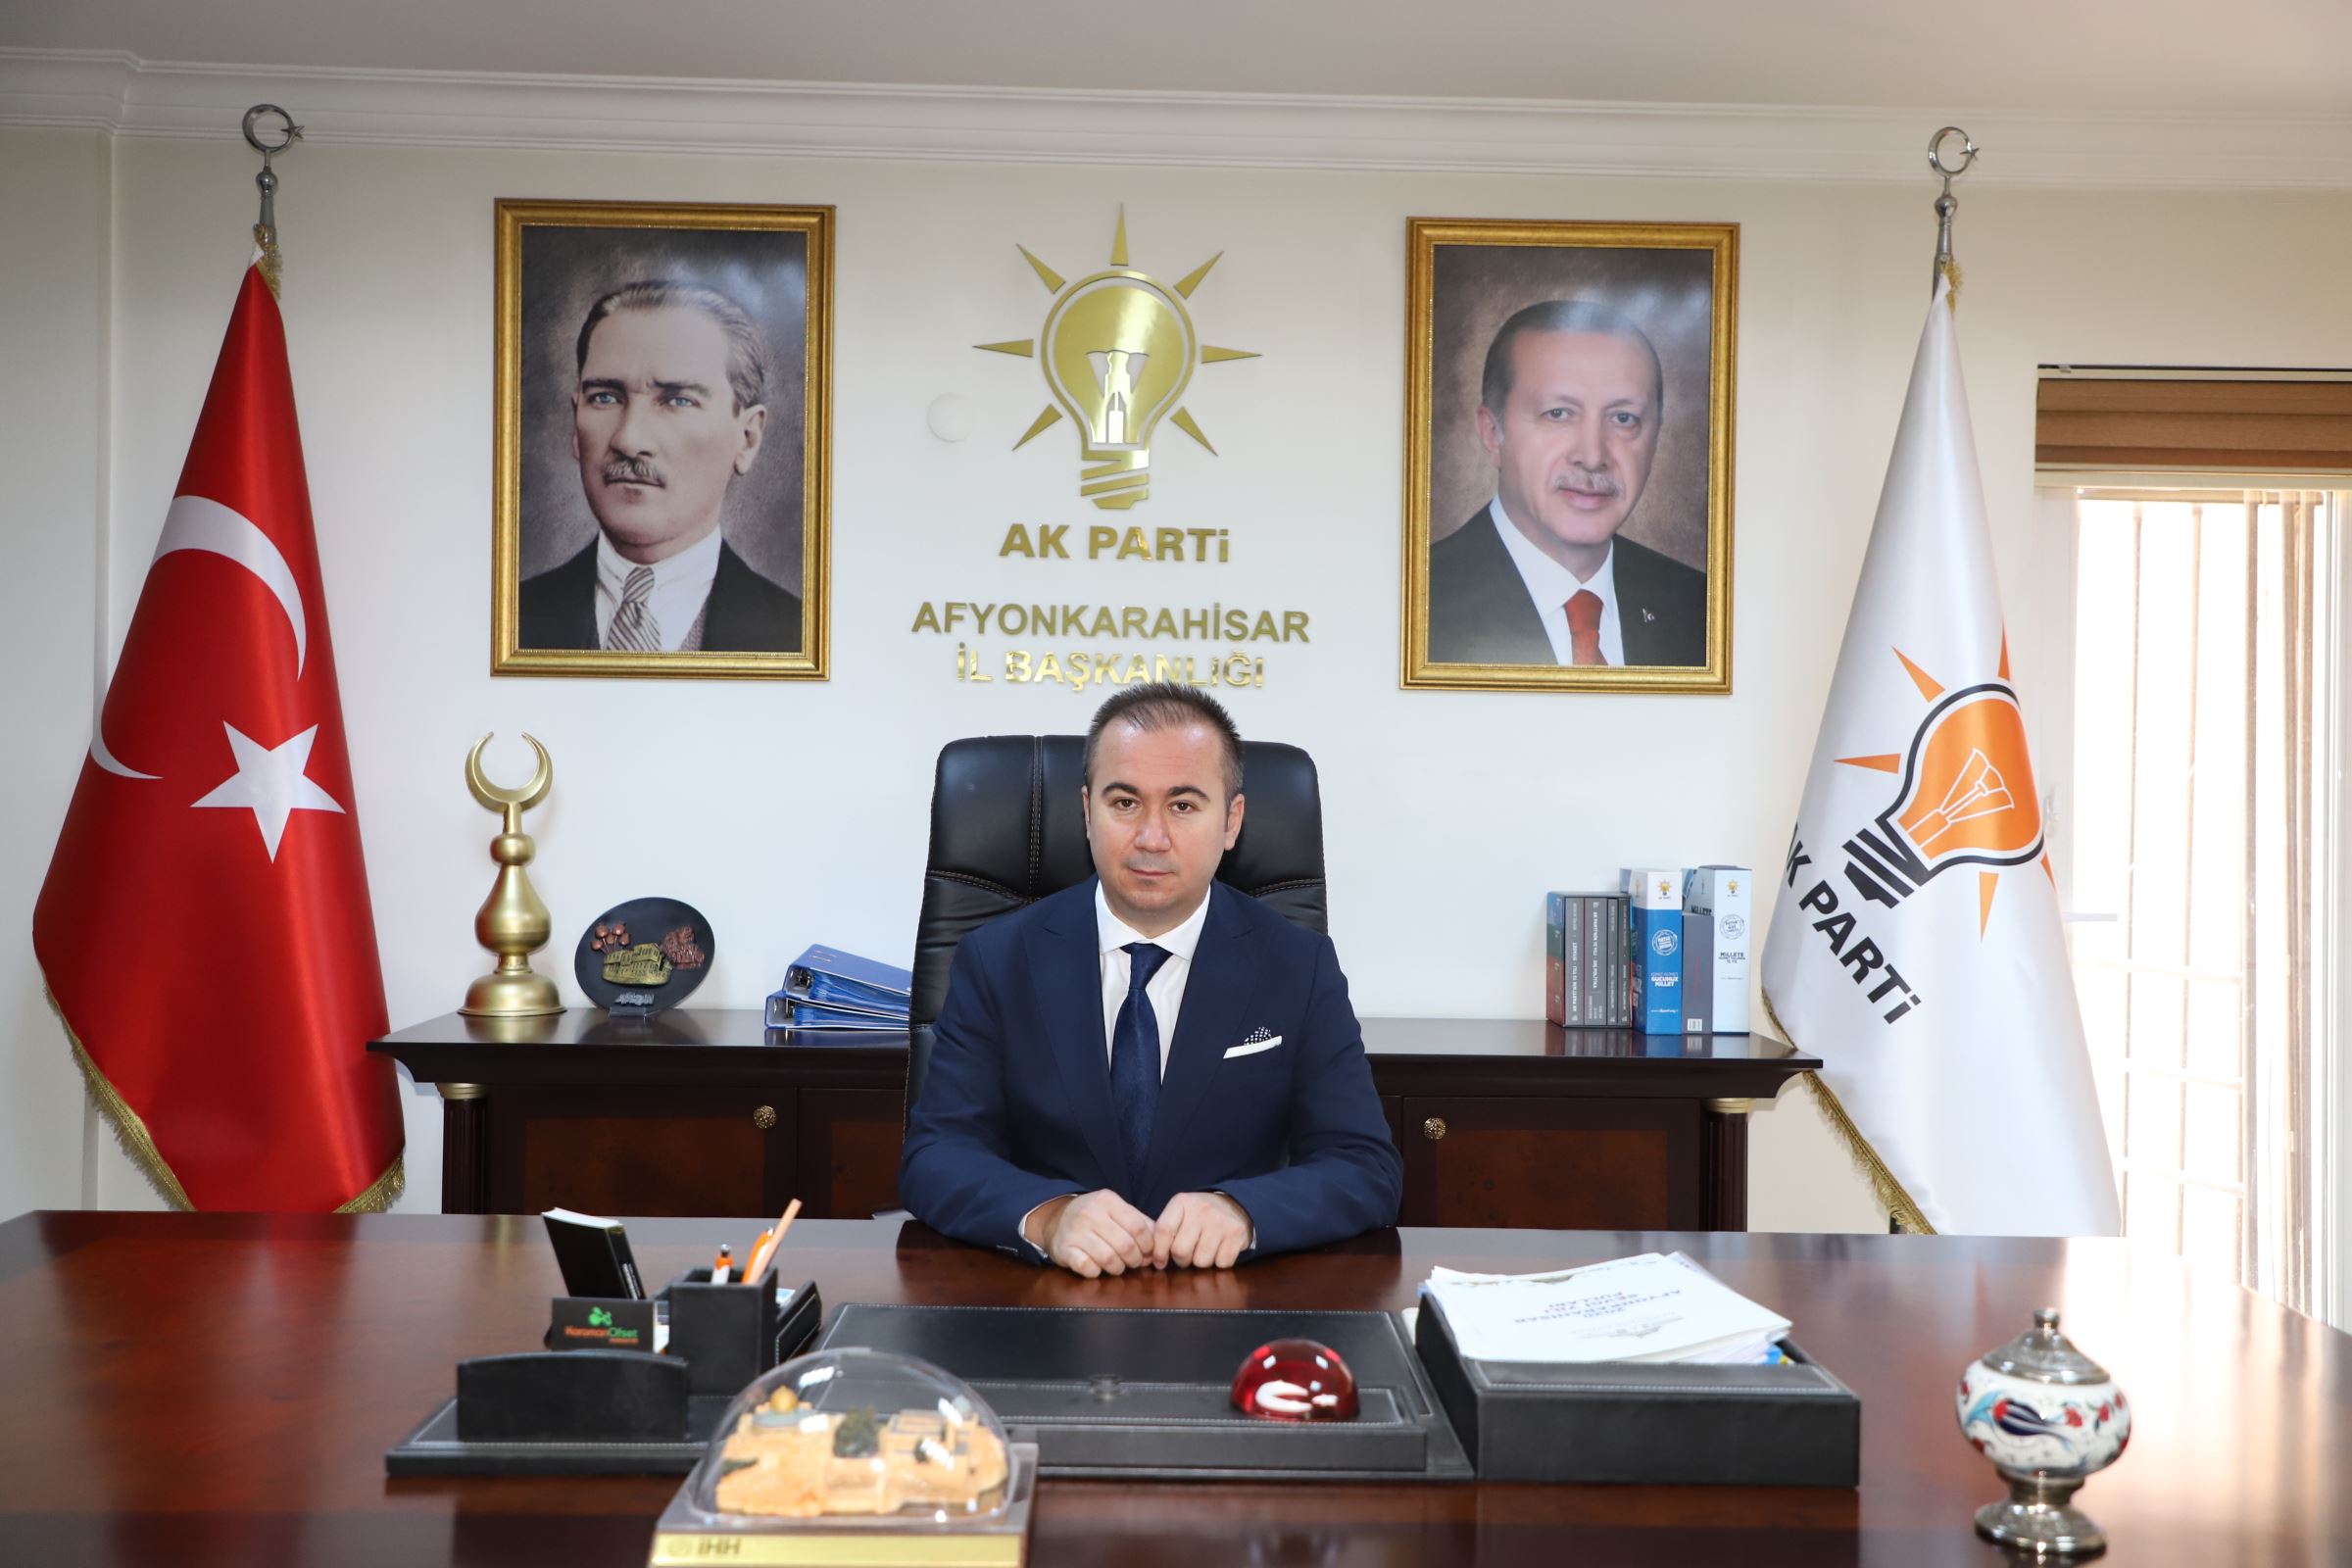 Uluçay; “Atatürk evi CHP döneminde harabe idi, biz ihya ettik”